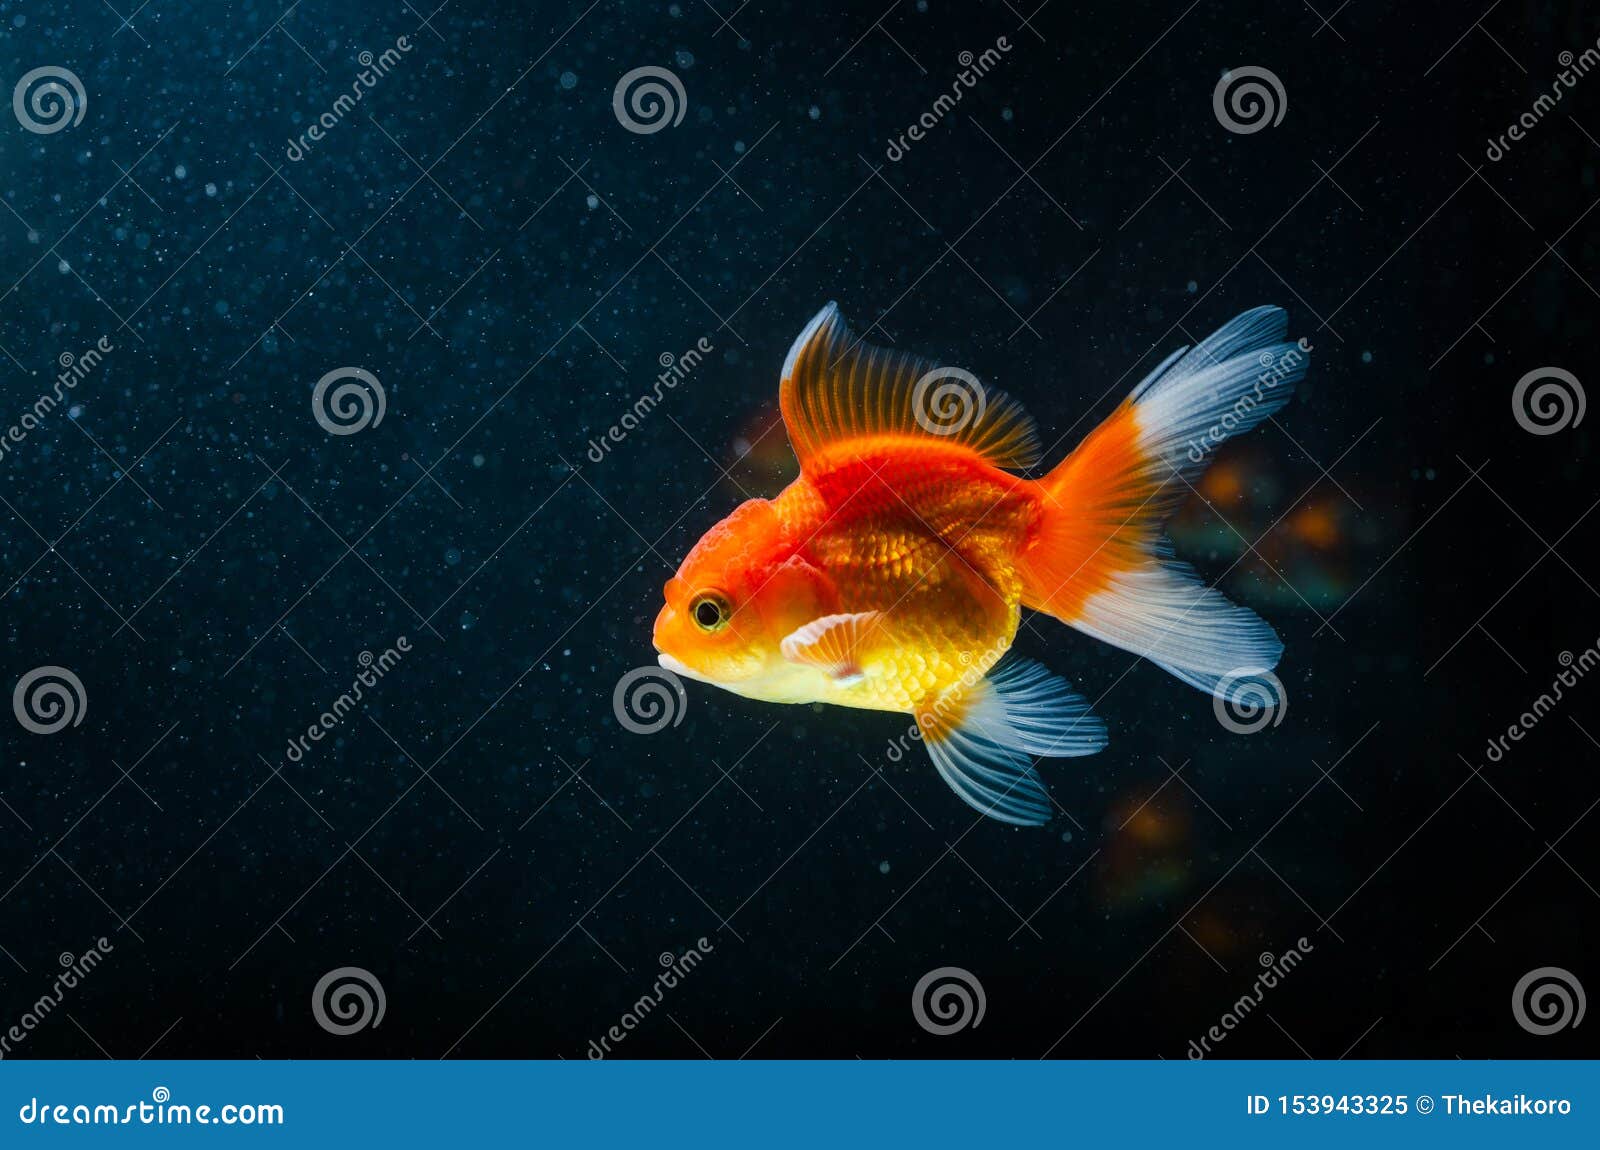 Goldfish Nature Beautiful Fish Against the Dark Background Stock ...